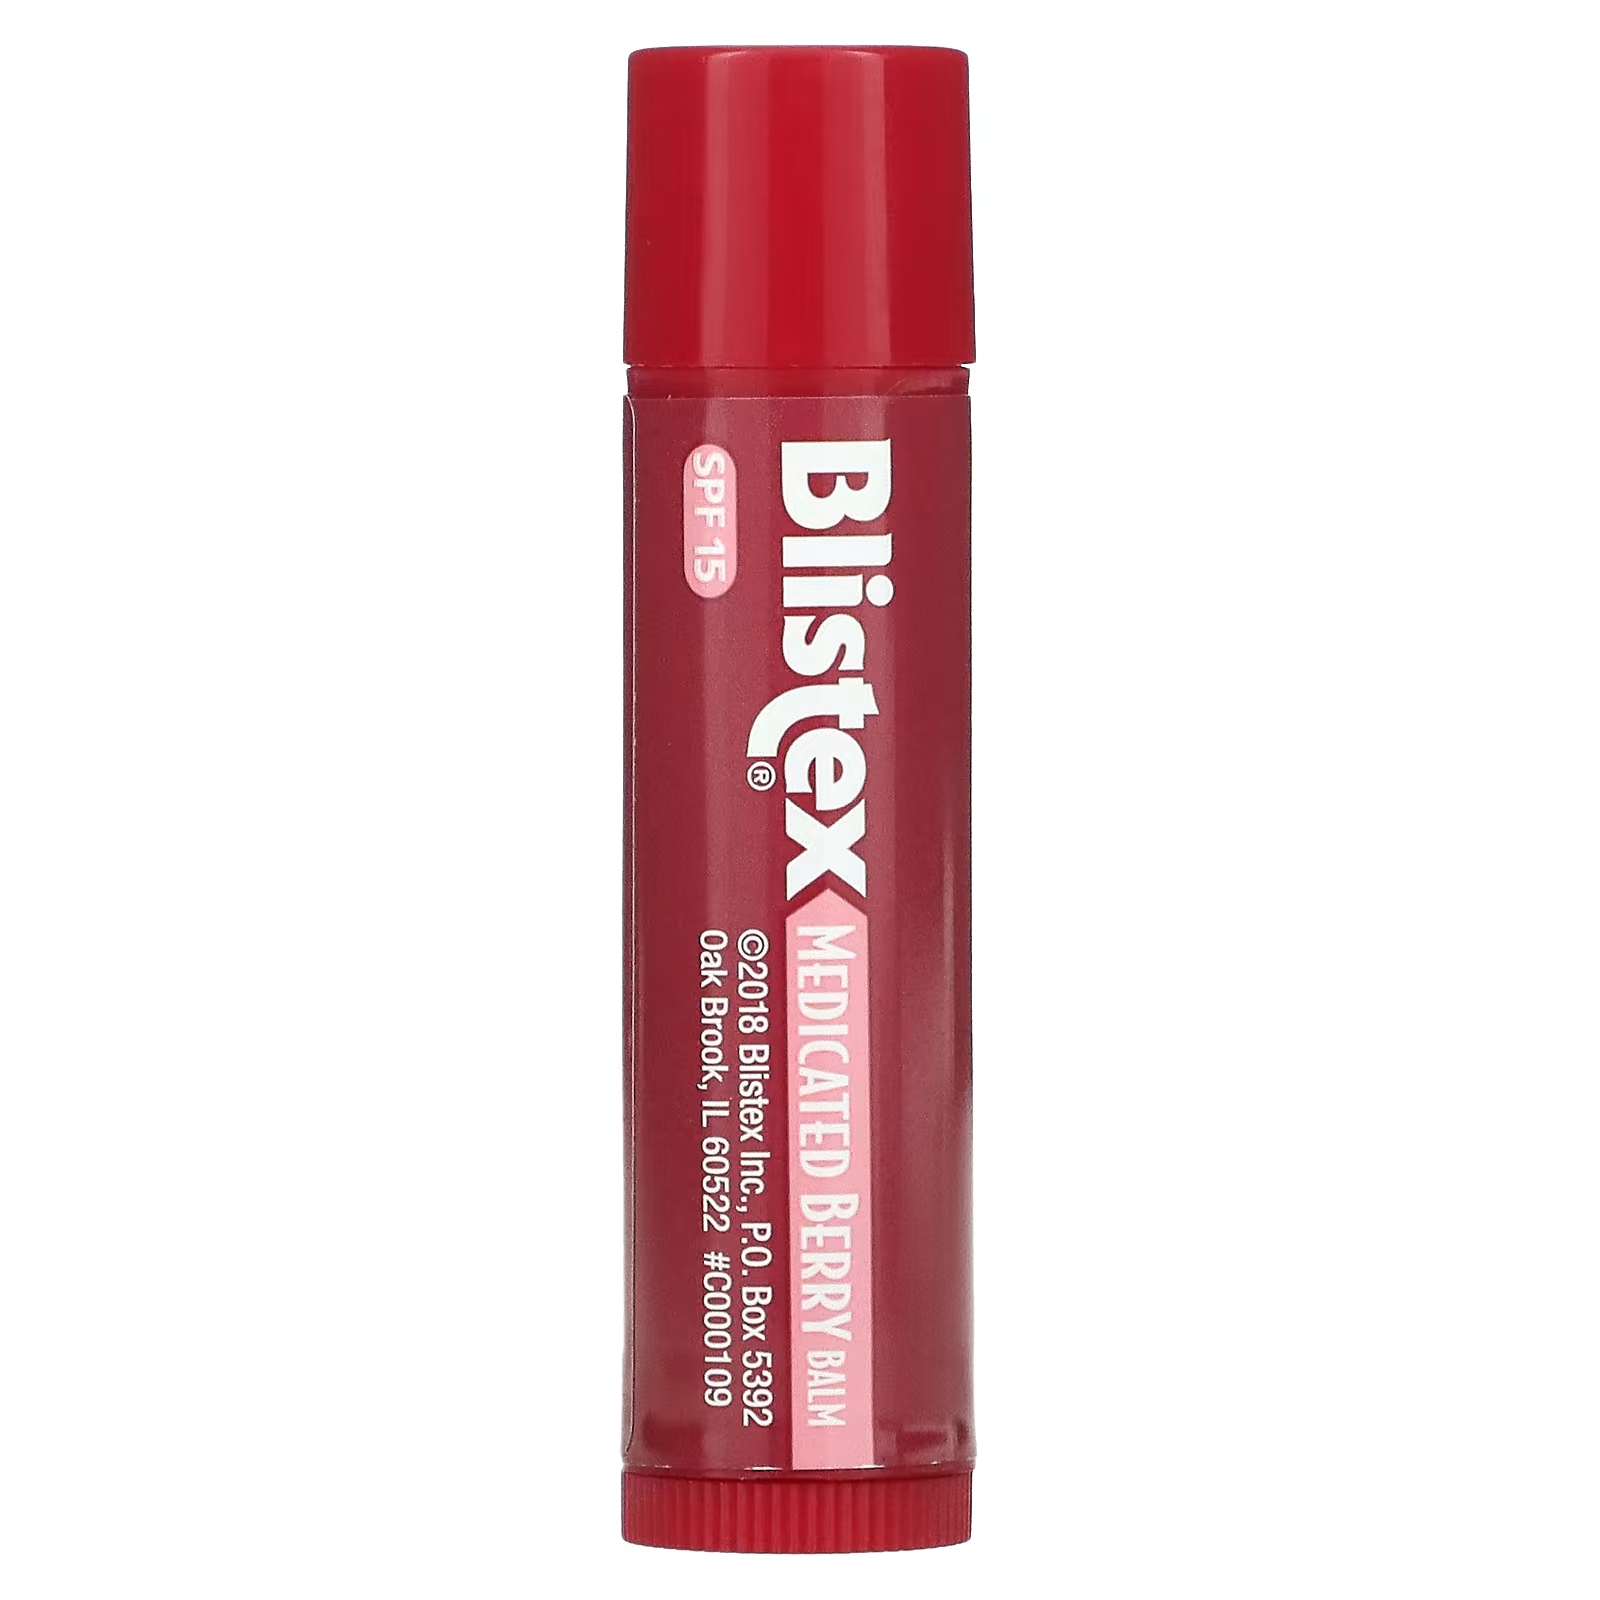 Blistex Лекарственное средство для защиты губ/солнцезащитное средство SPF 15 Berry, 0,15 унции (4,25 г) blistex dct увлажняющее средство для губ 7 08 г 0 25 унции